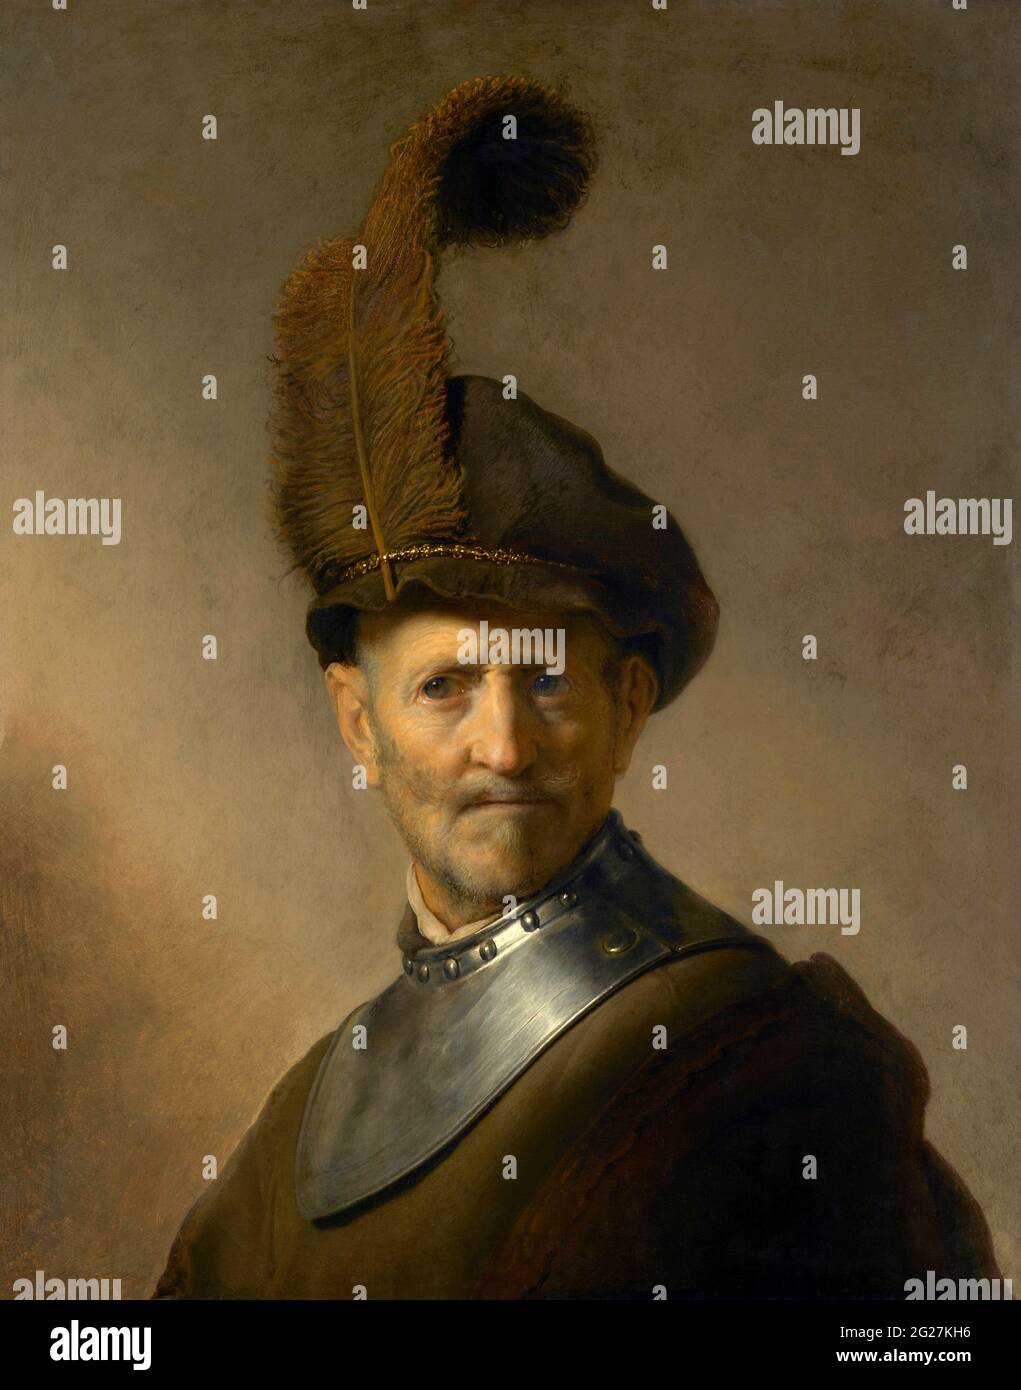 Rembrandt aus dem 17. Jahrhundert, Gemälde eines alten Mannes in Militäruniform, der als sein eigener Vater gilt. Stockfoto